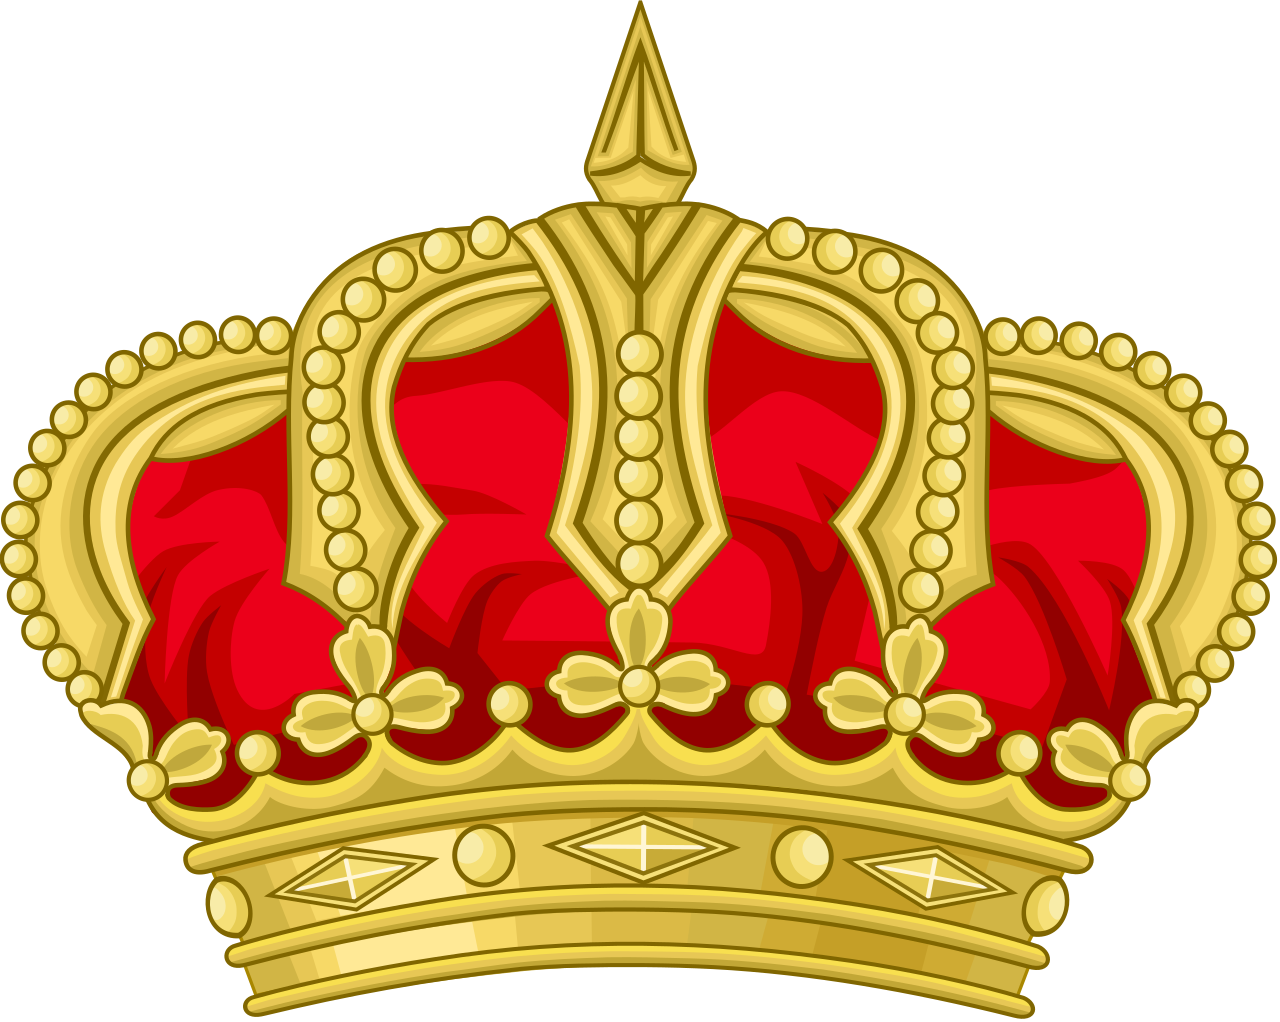 Royal Crown Of Jordan - Royal Crown Of Jordan (1280x1022)